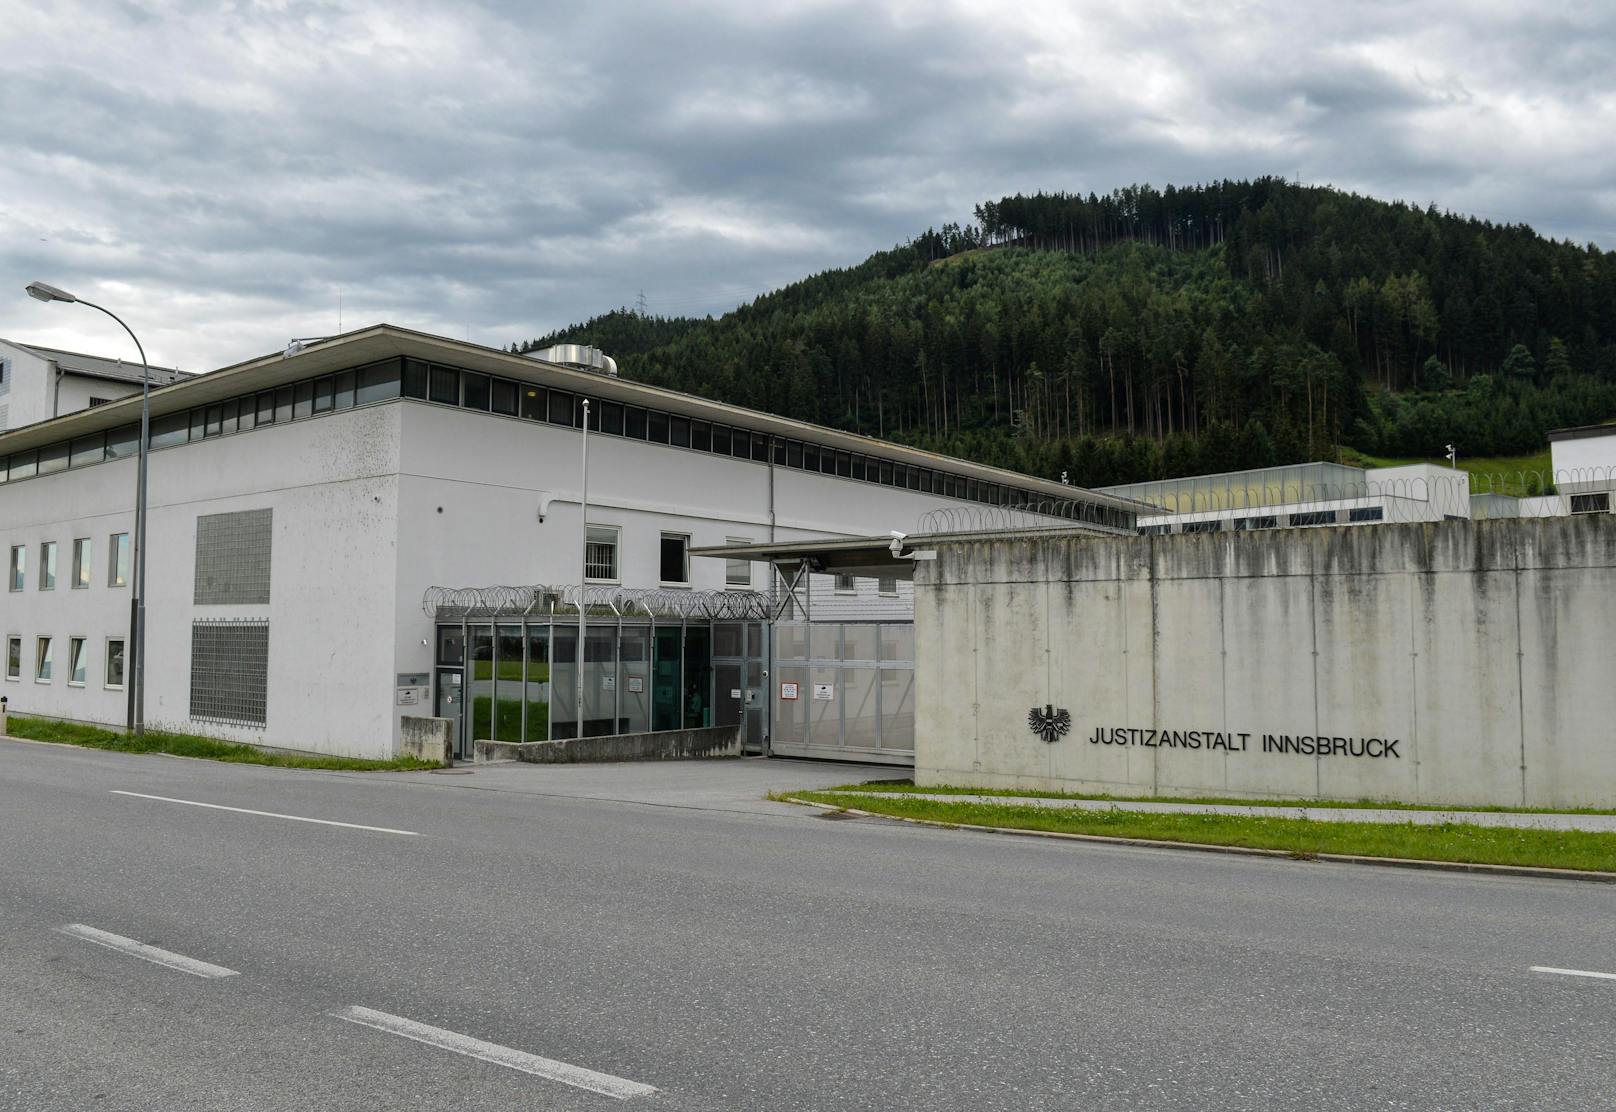 Justizanstalt Innsbruck